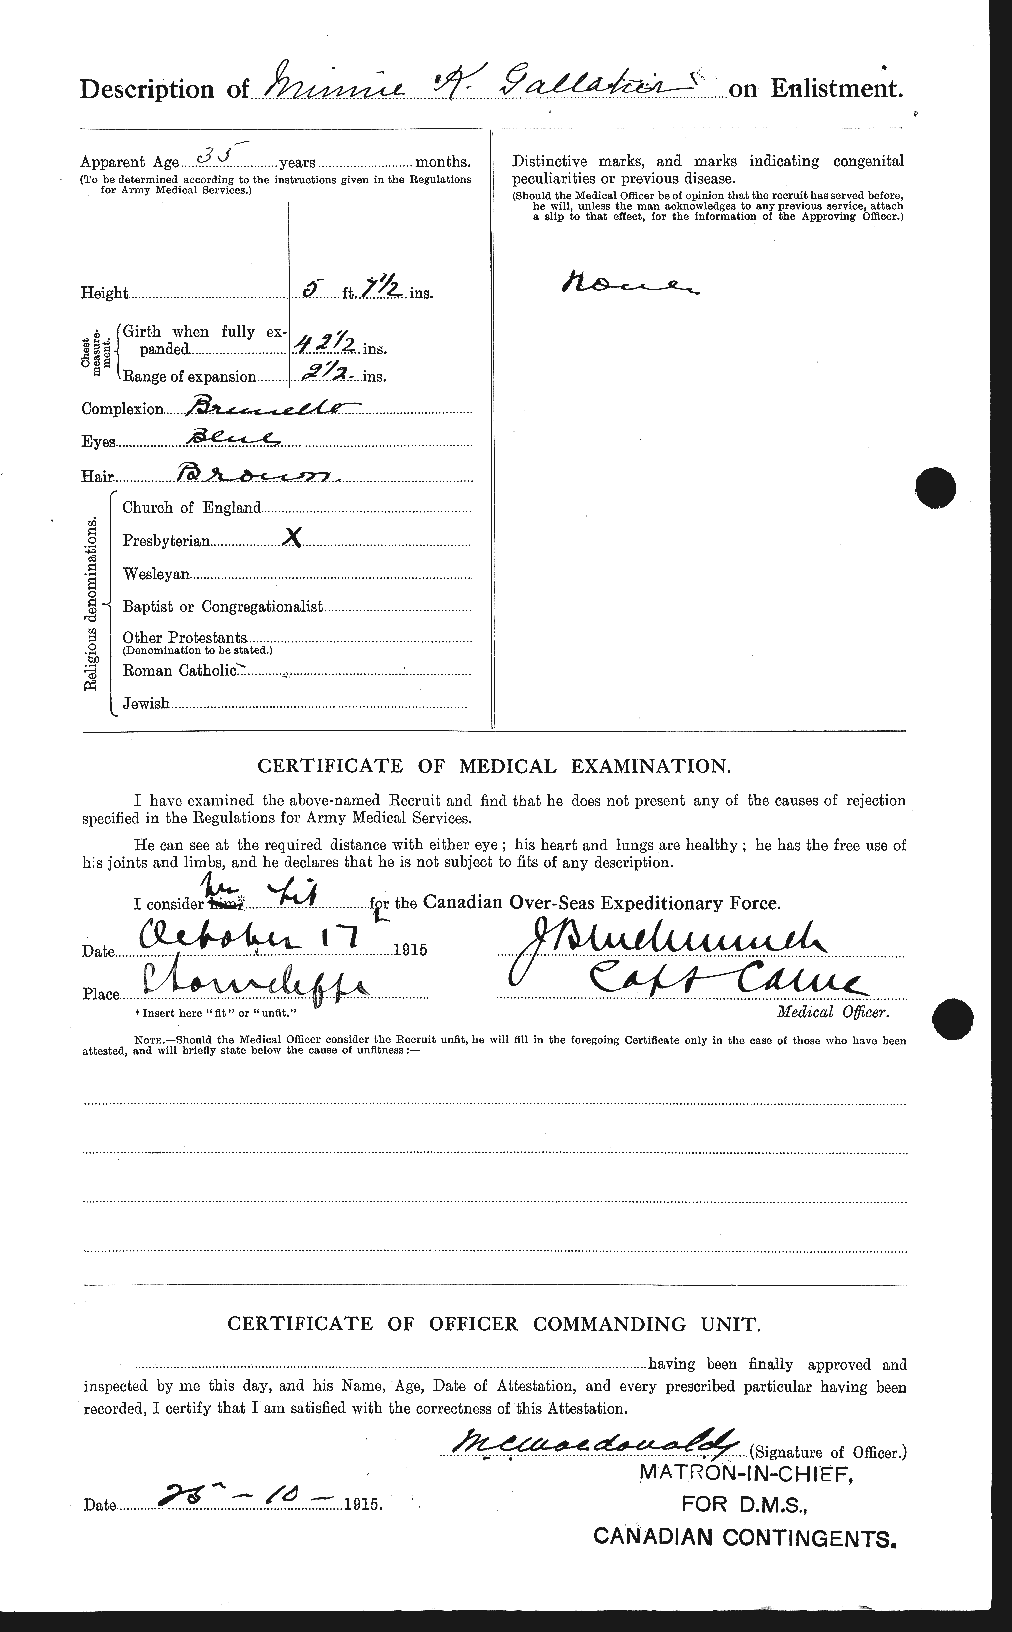 Dossiers du Personnel de la Première Guerre mondiale - CEC 349378b